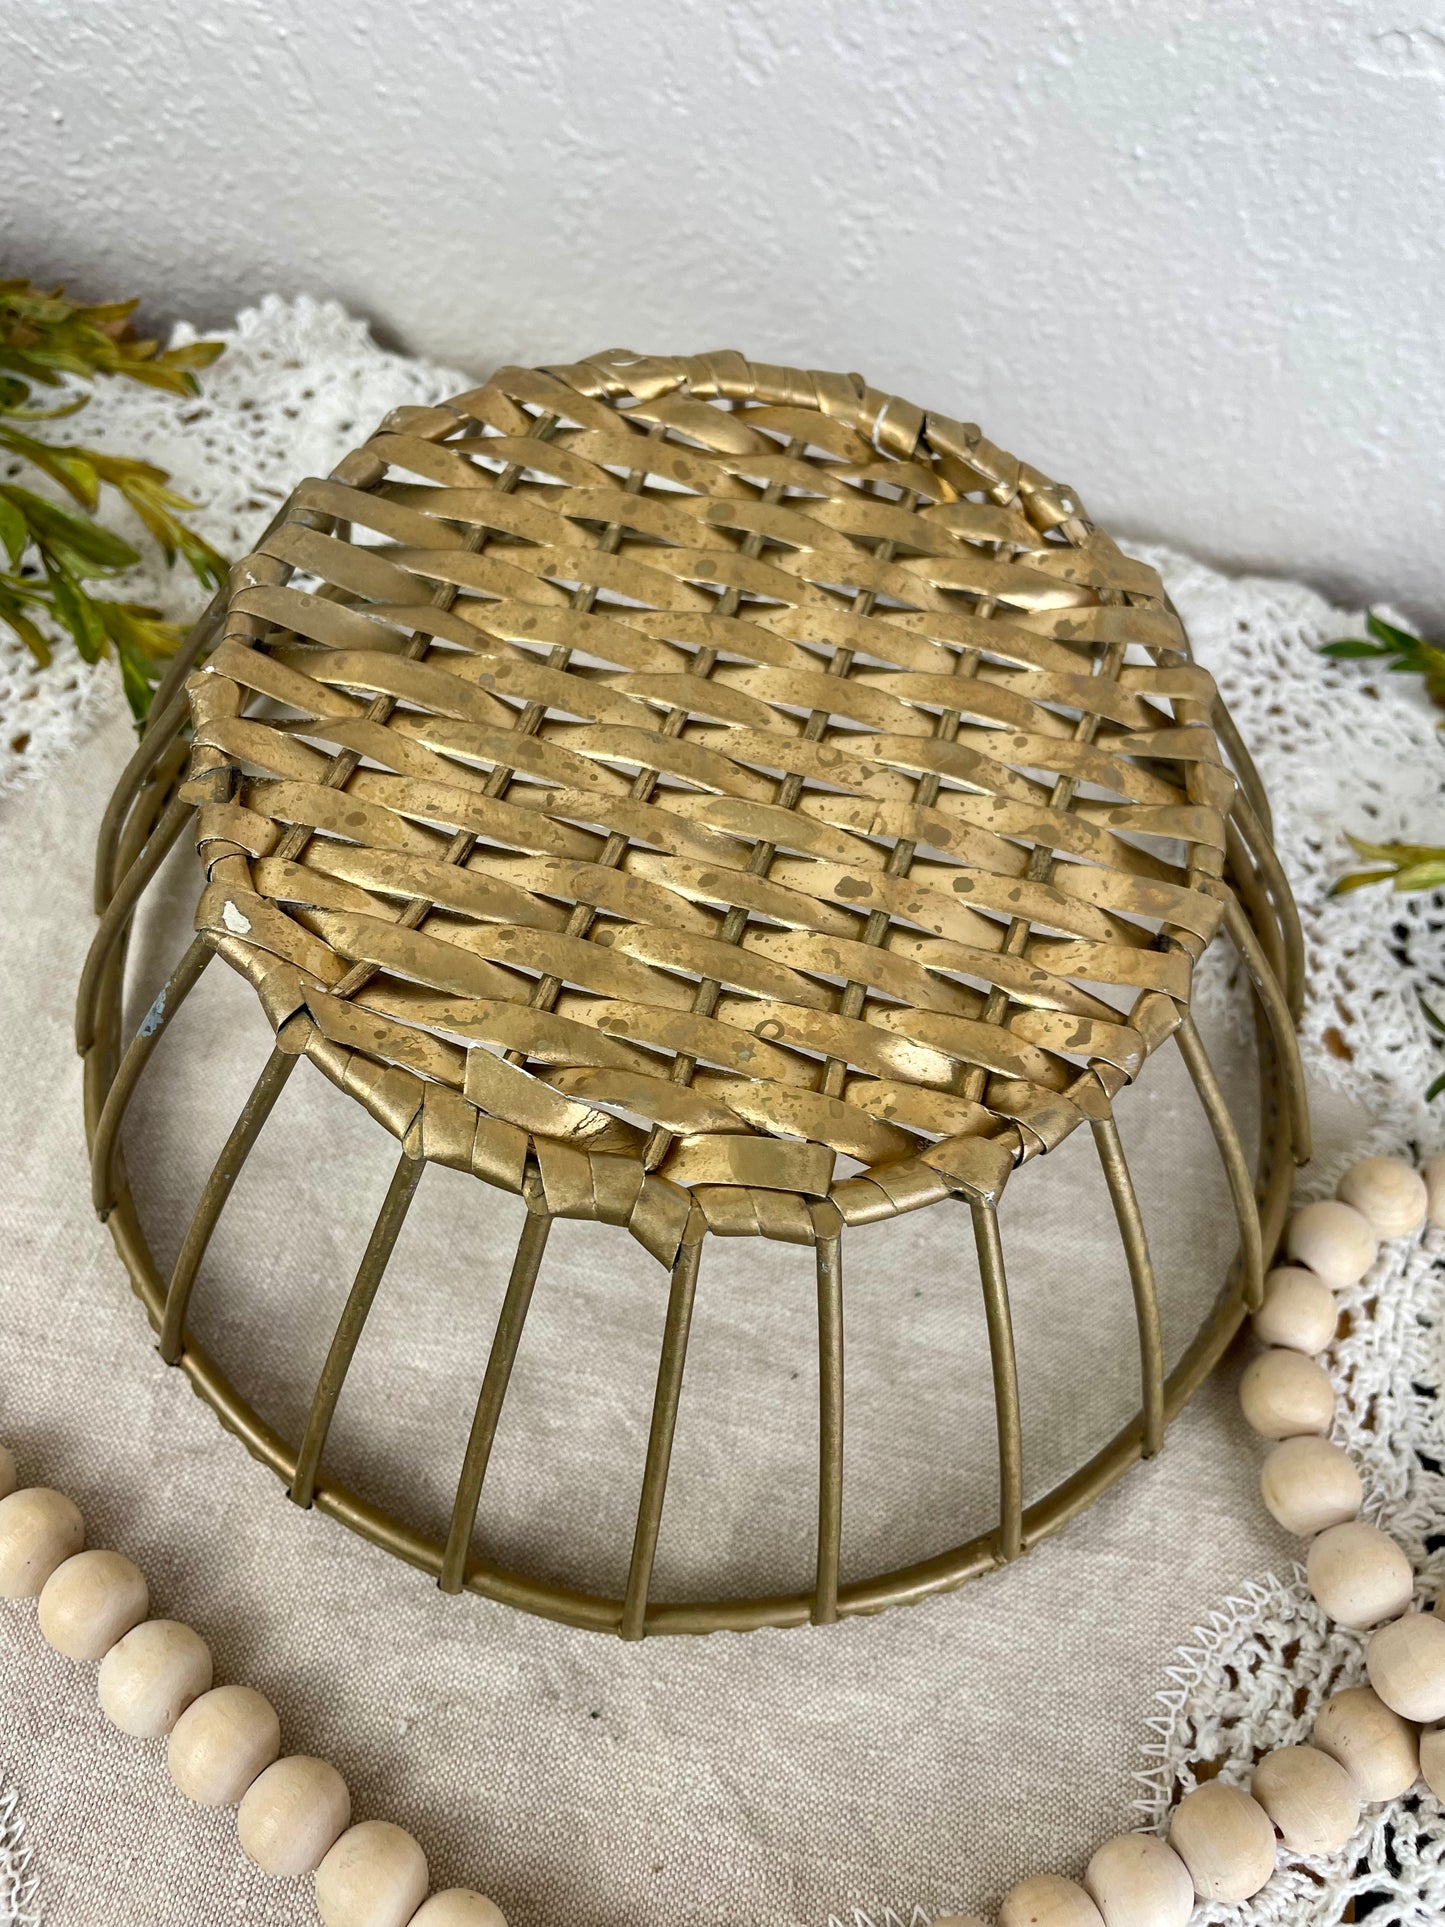 Vintage Gold Metal Basket